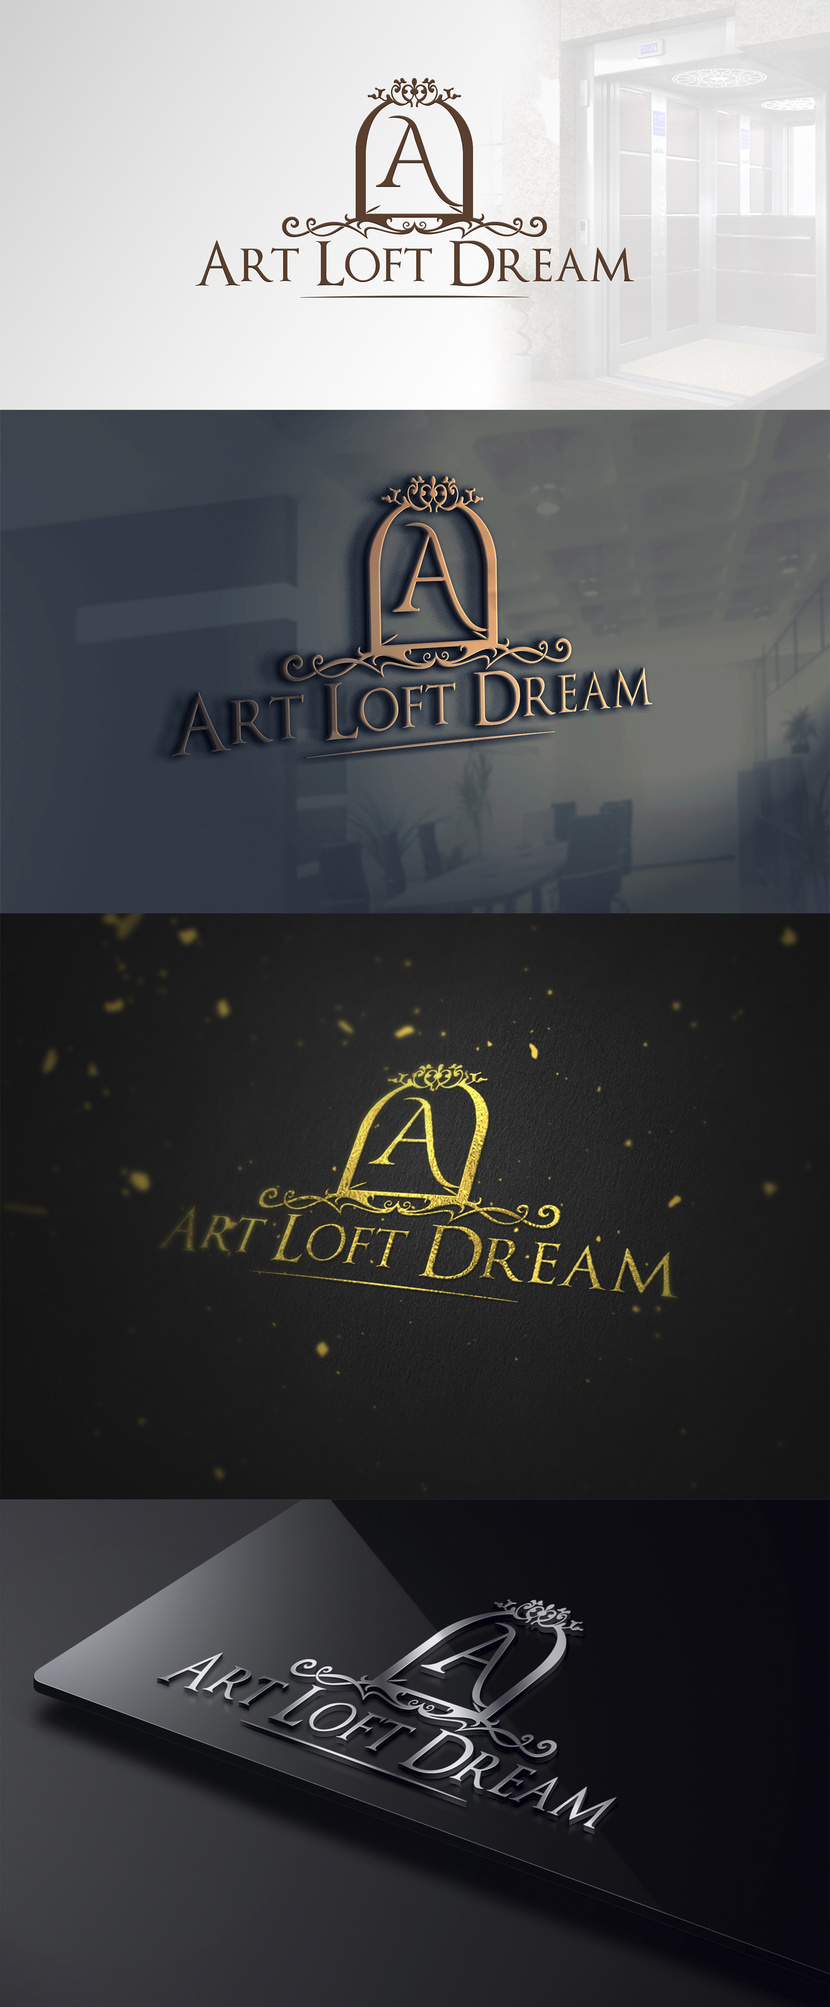 #3 - Создание логотипа и фирменного стиля открывающегося Лофта